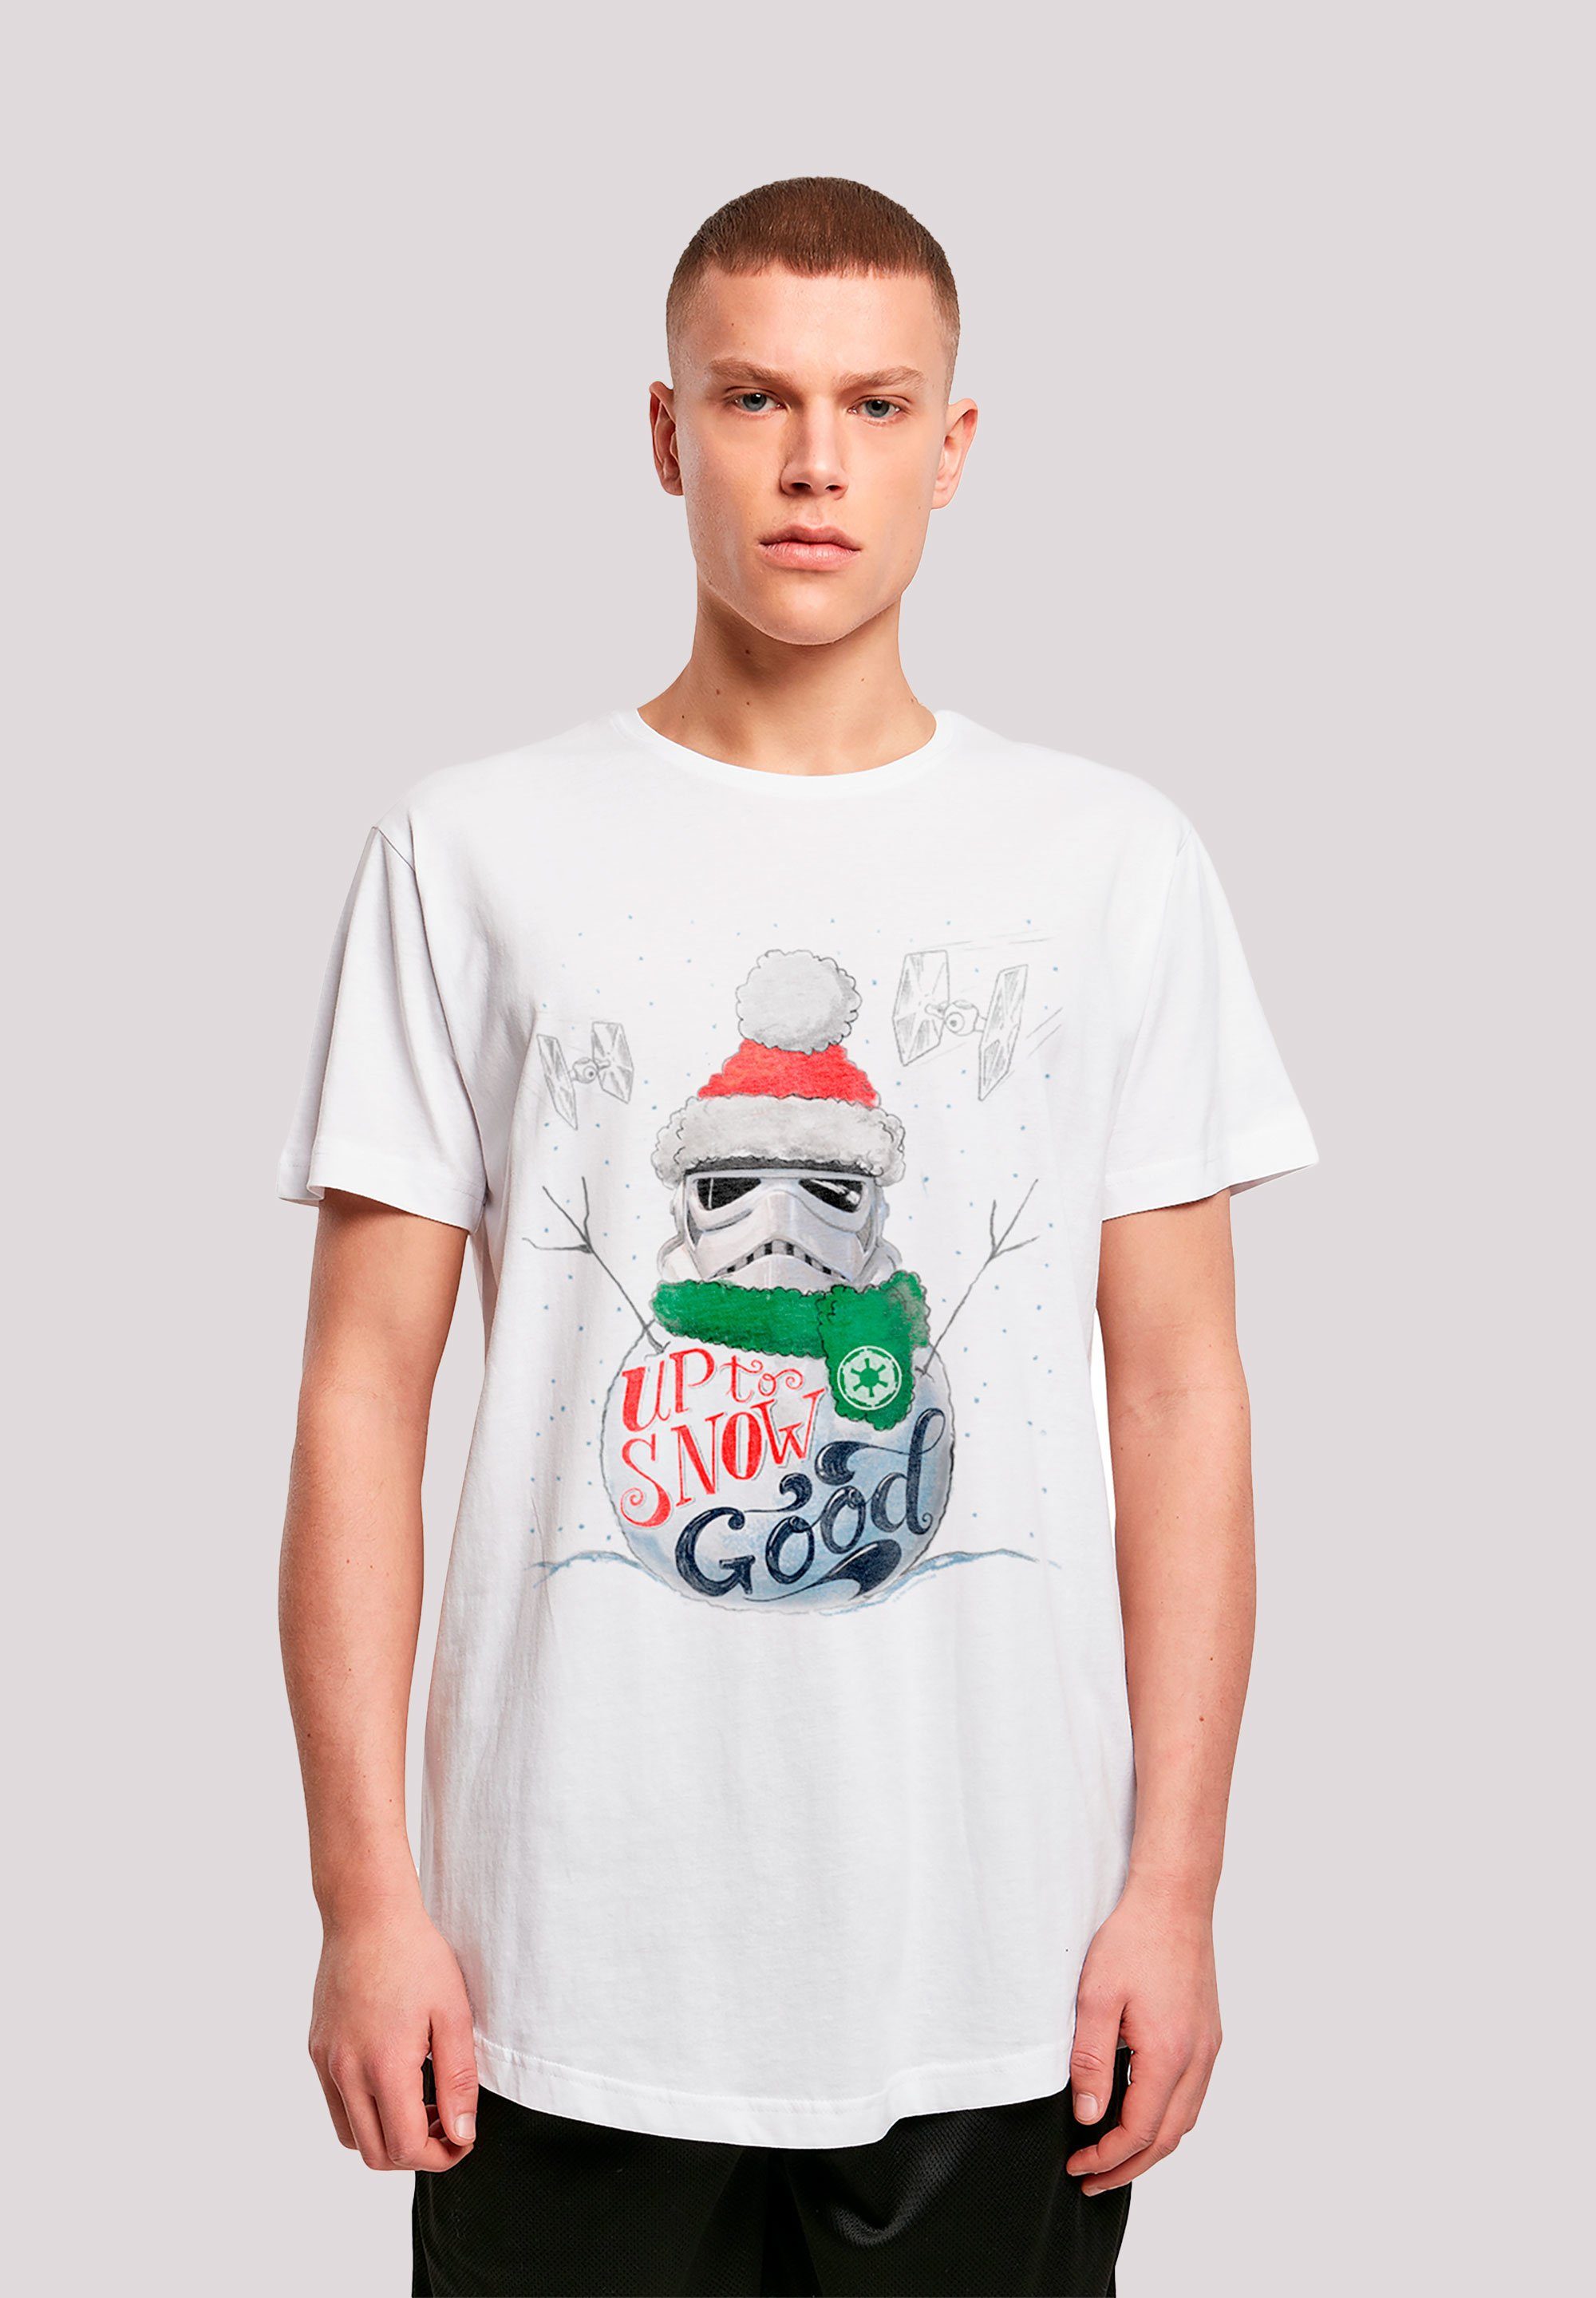 F4NT4STIC T-Shirt Star Wars Stromtrooper Up To Snow Good Krieg der Sterne Print weiß